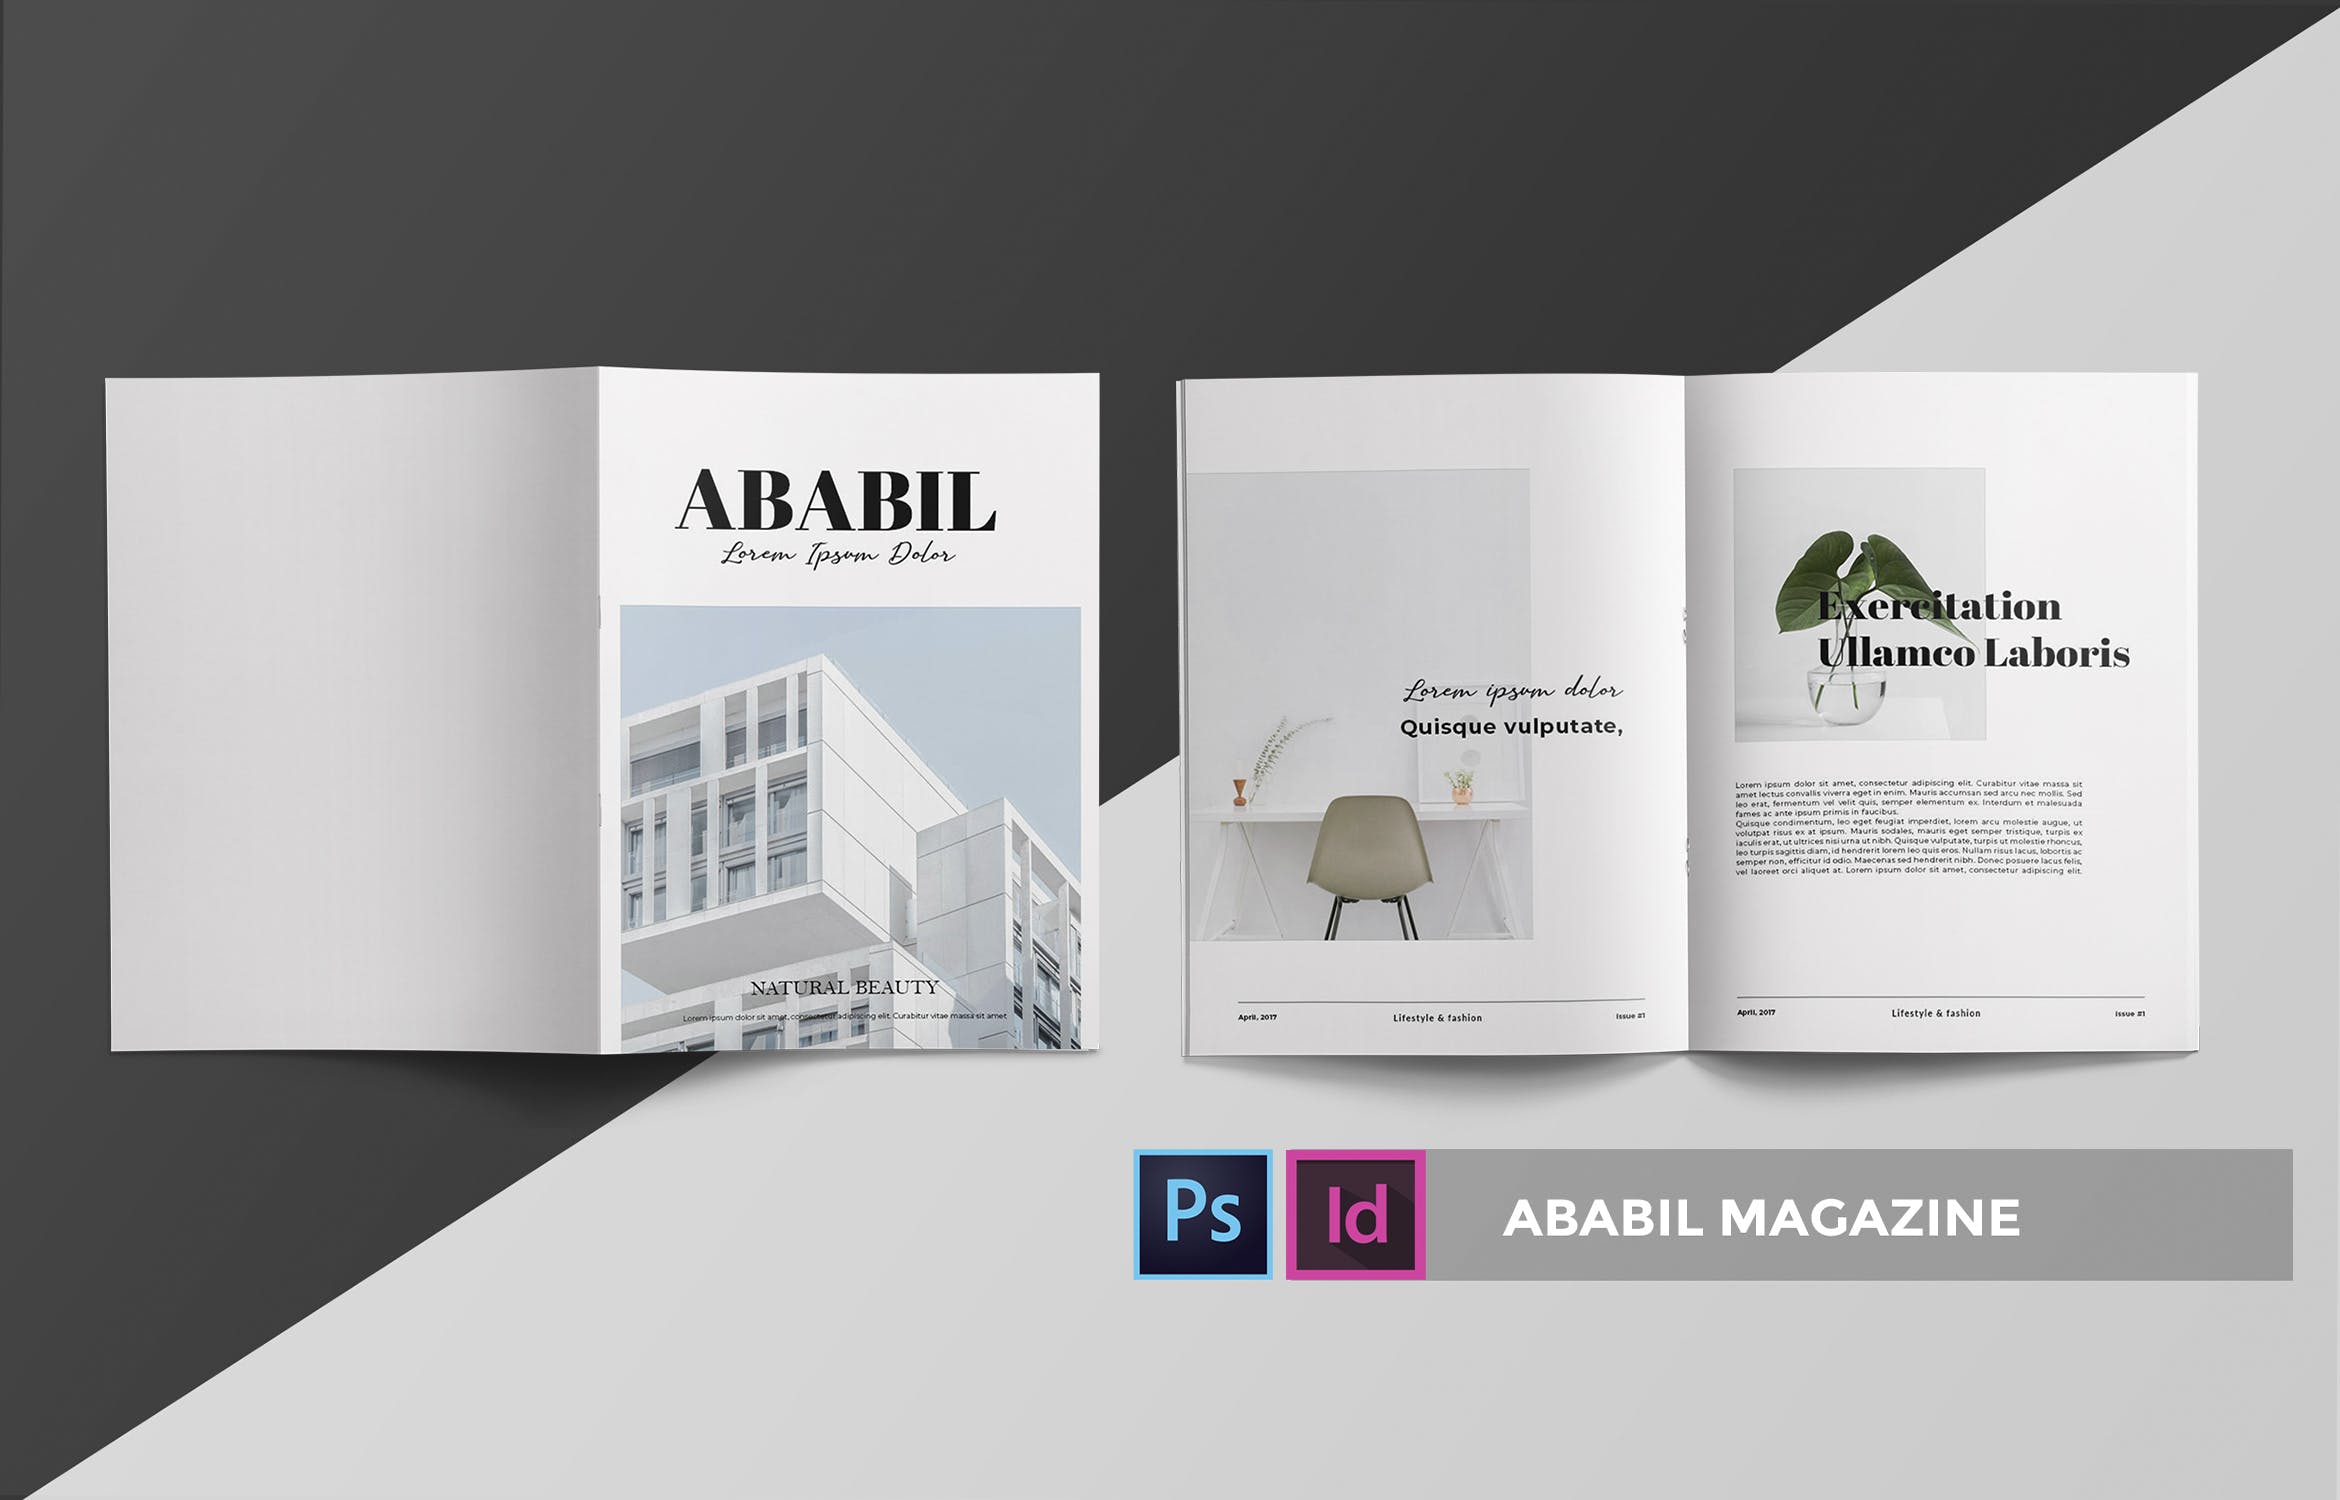 高端建筑/设计/房地产主题第一素材精选杂志排版设计INDD模板 ABABIL | Magazine Template插图(2)